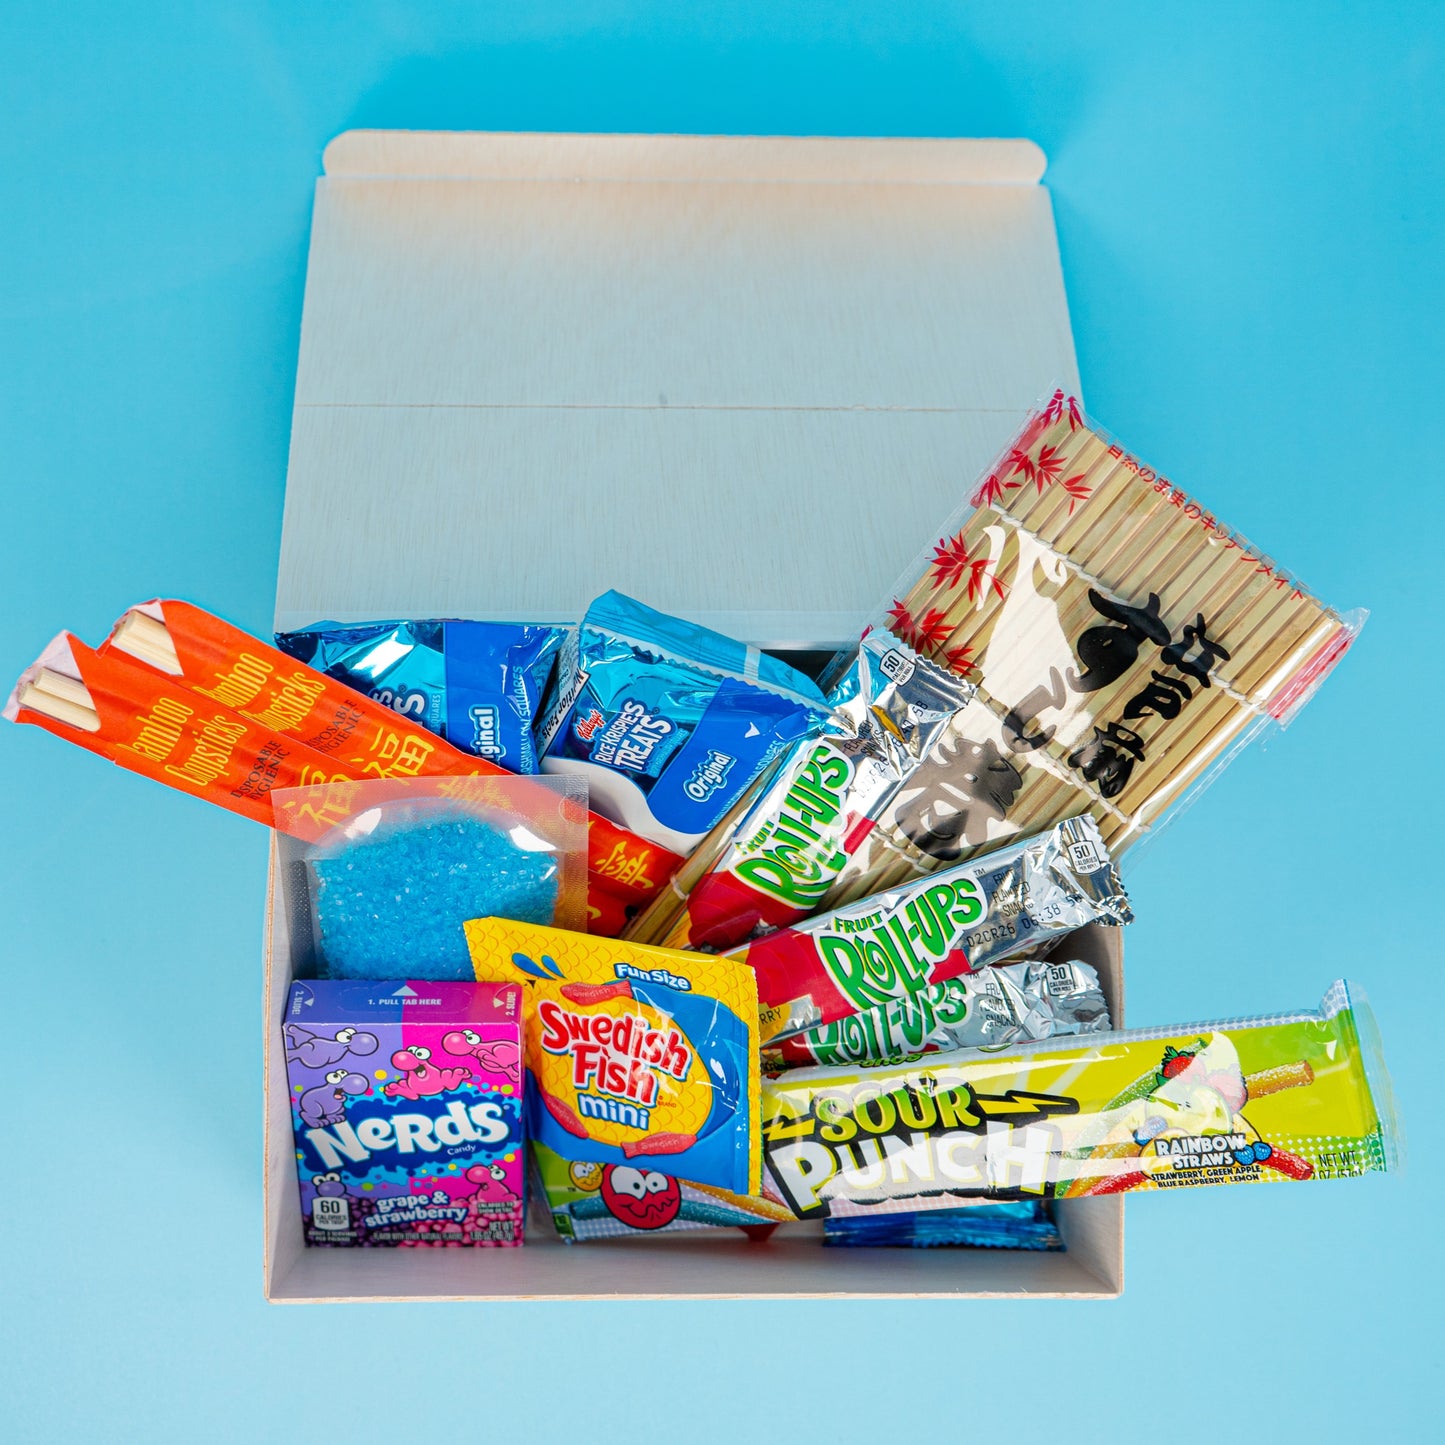 Sushi Candy - Japanese Kit Kat and Japanese candy box – SUSHI CANDY